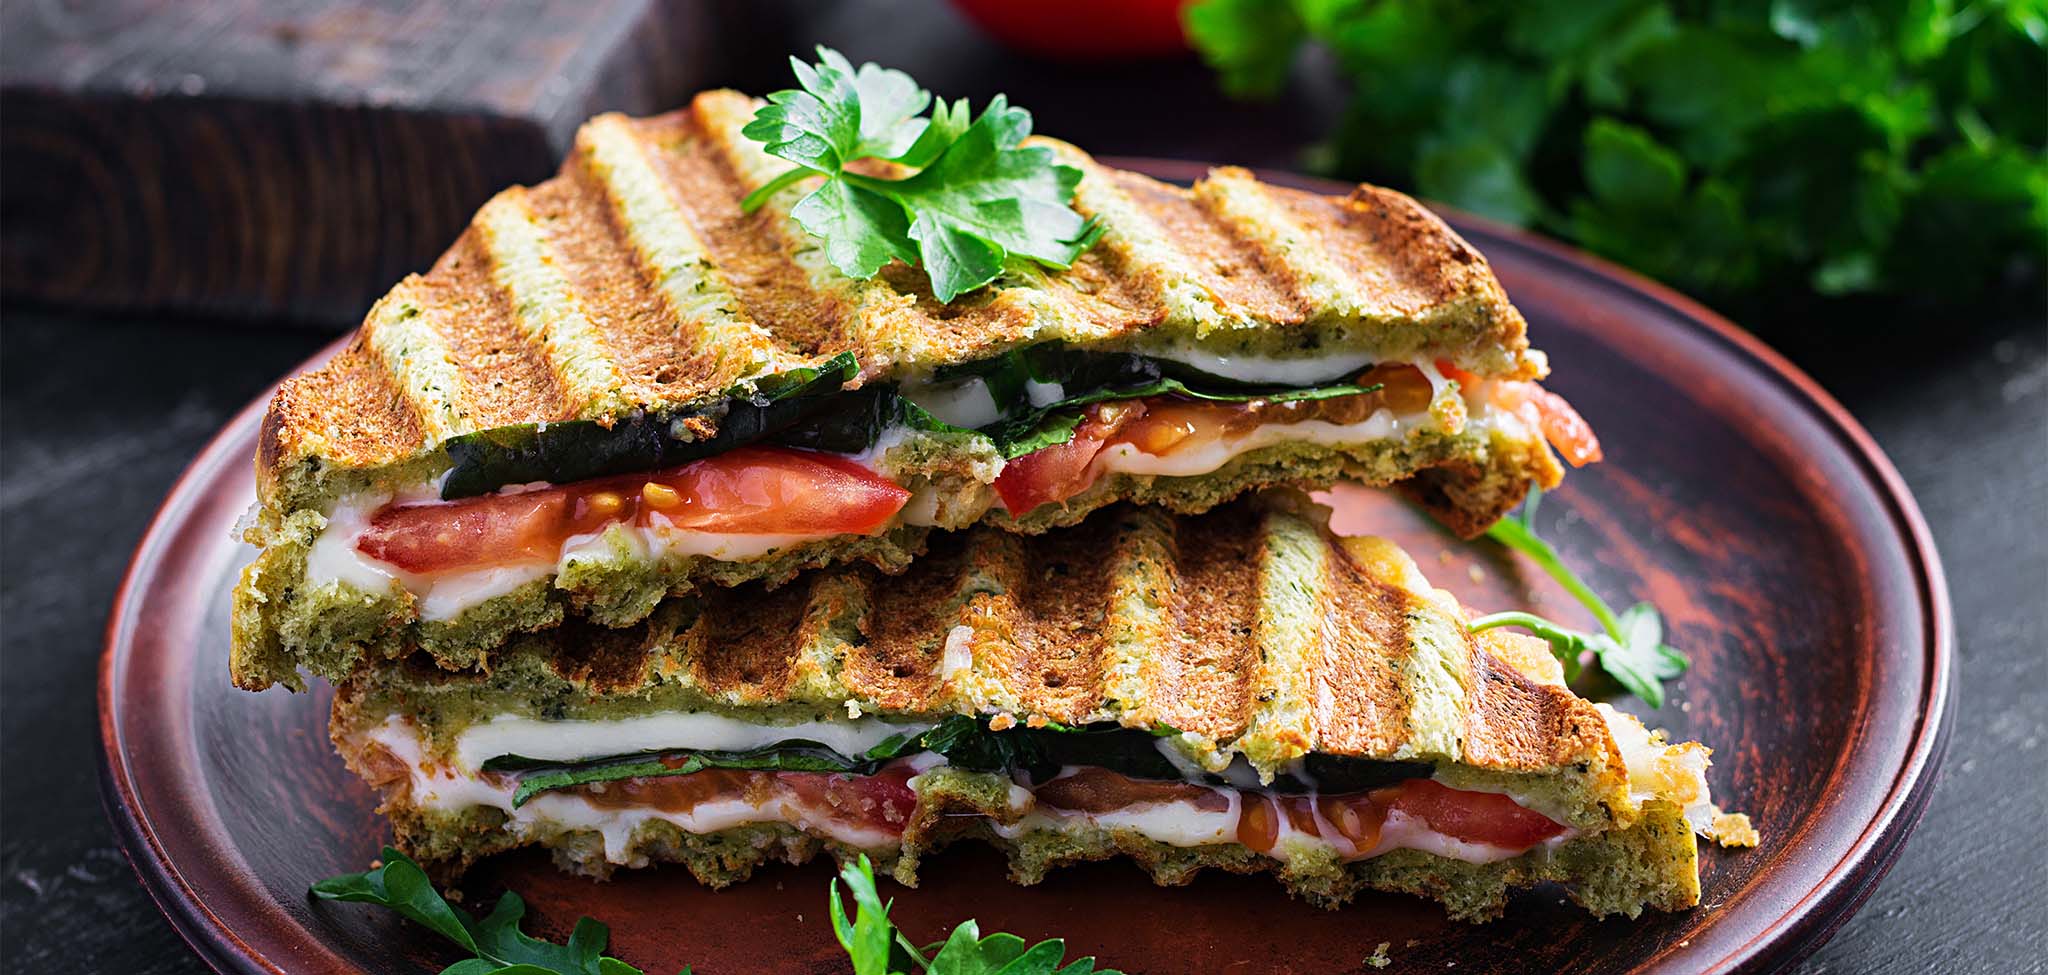 Panini sandwich made with ciabatta bread